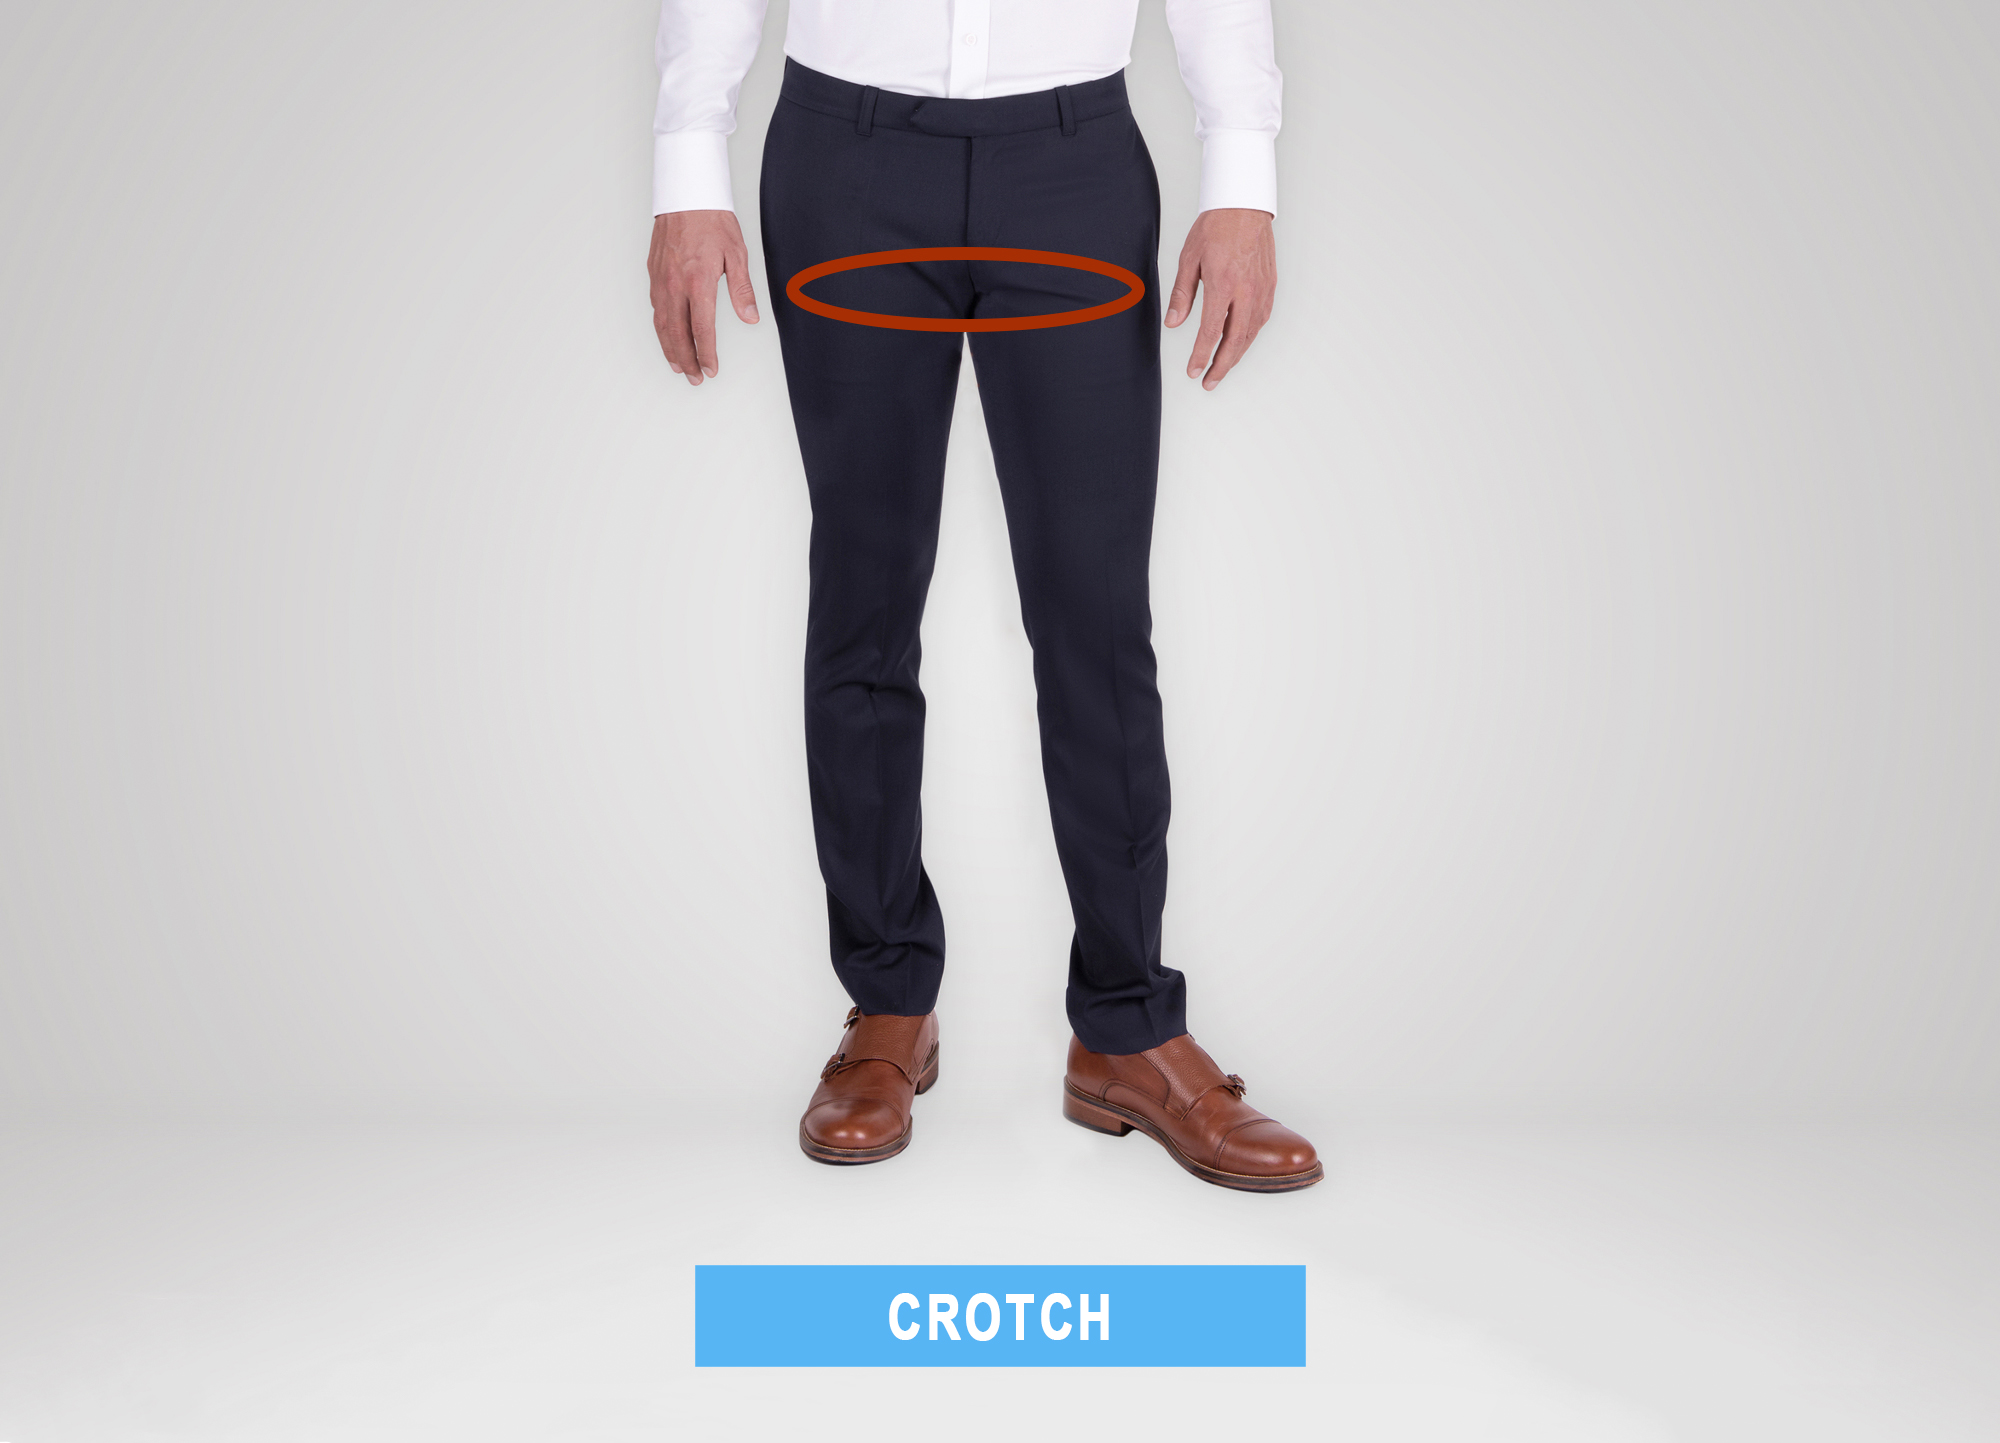 Women Open Crotch Pants Hidden Zipper Outdoor Jeans Sport Clubwear Skin  Trousers | eBay